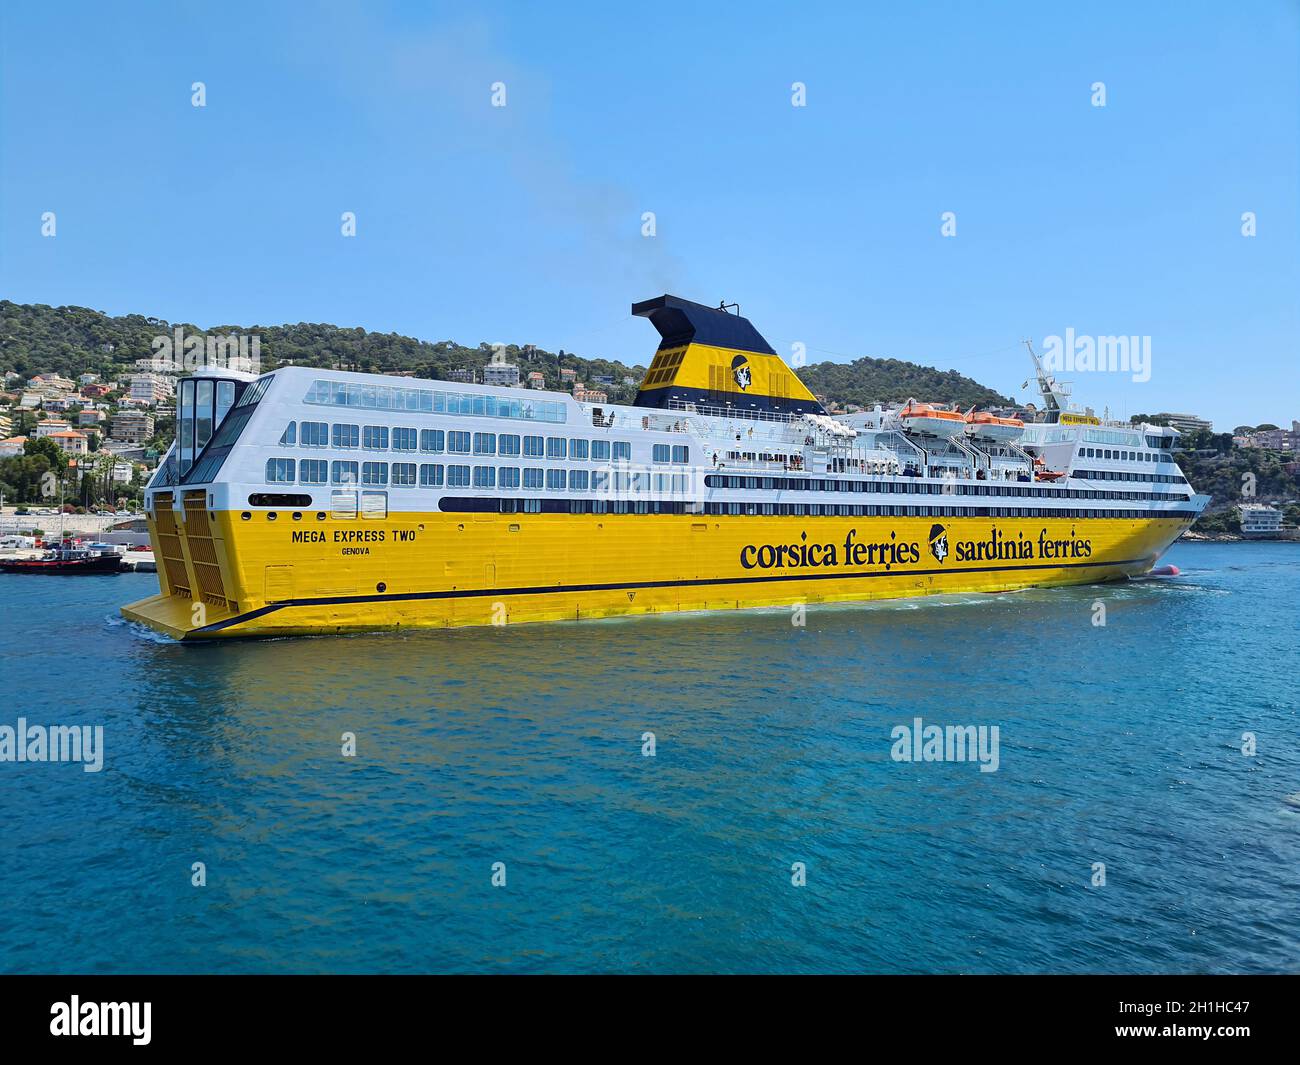 Ferries sardinia immagini e fotografie stock ad alta risoluzione - Alamy